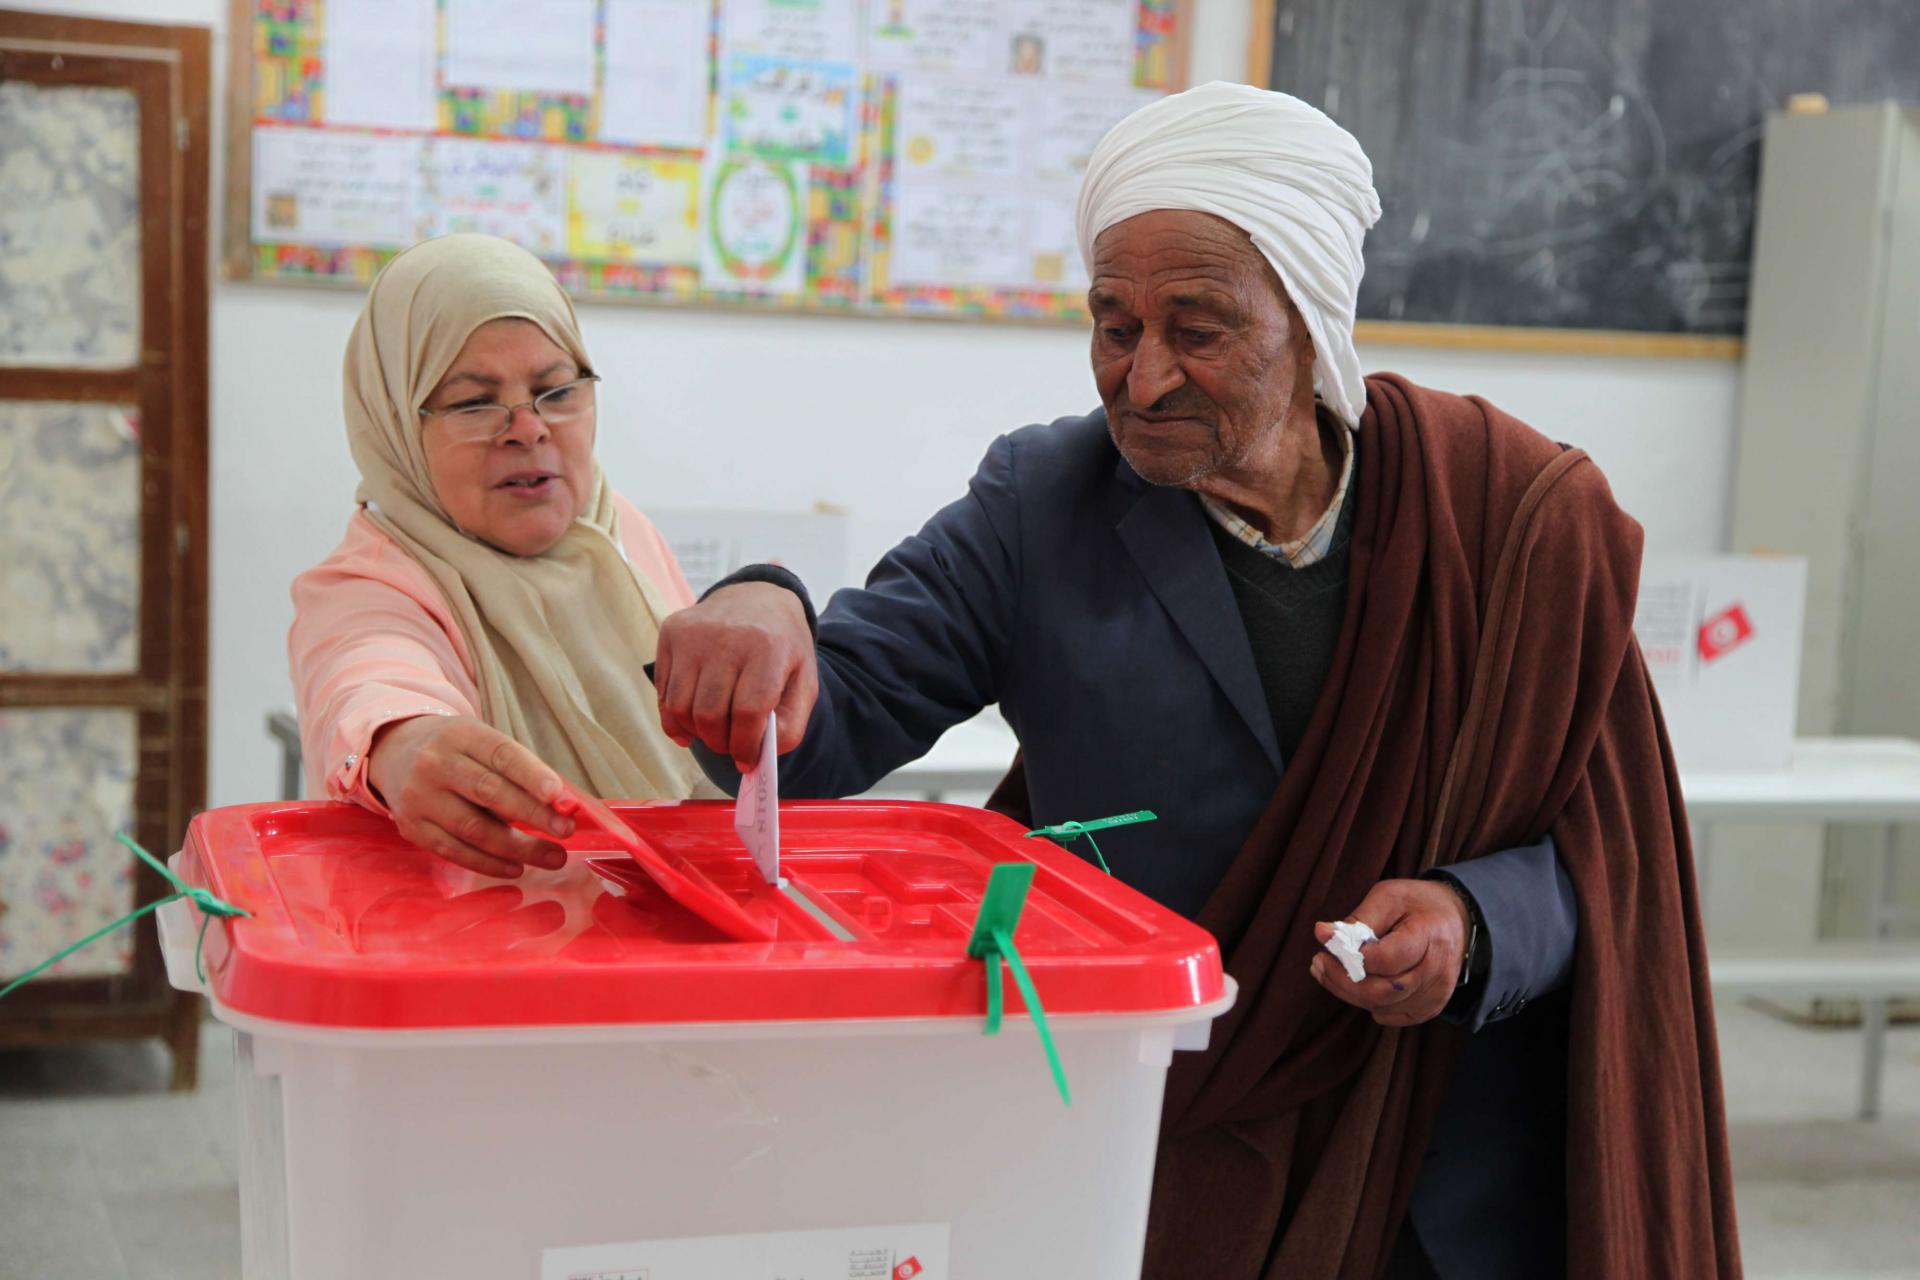 الانتخابات التونسية